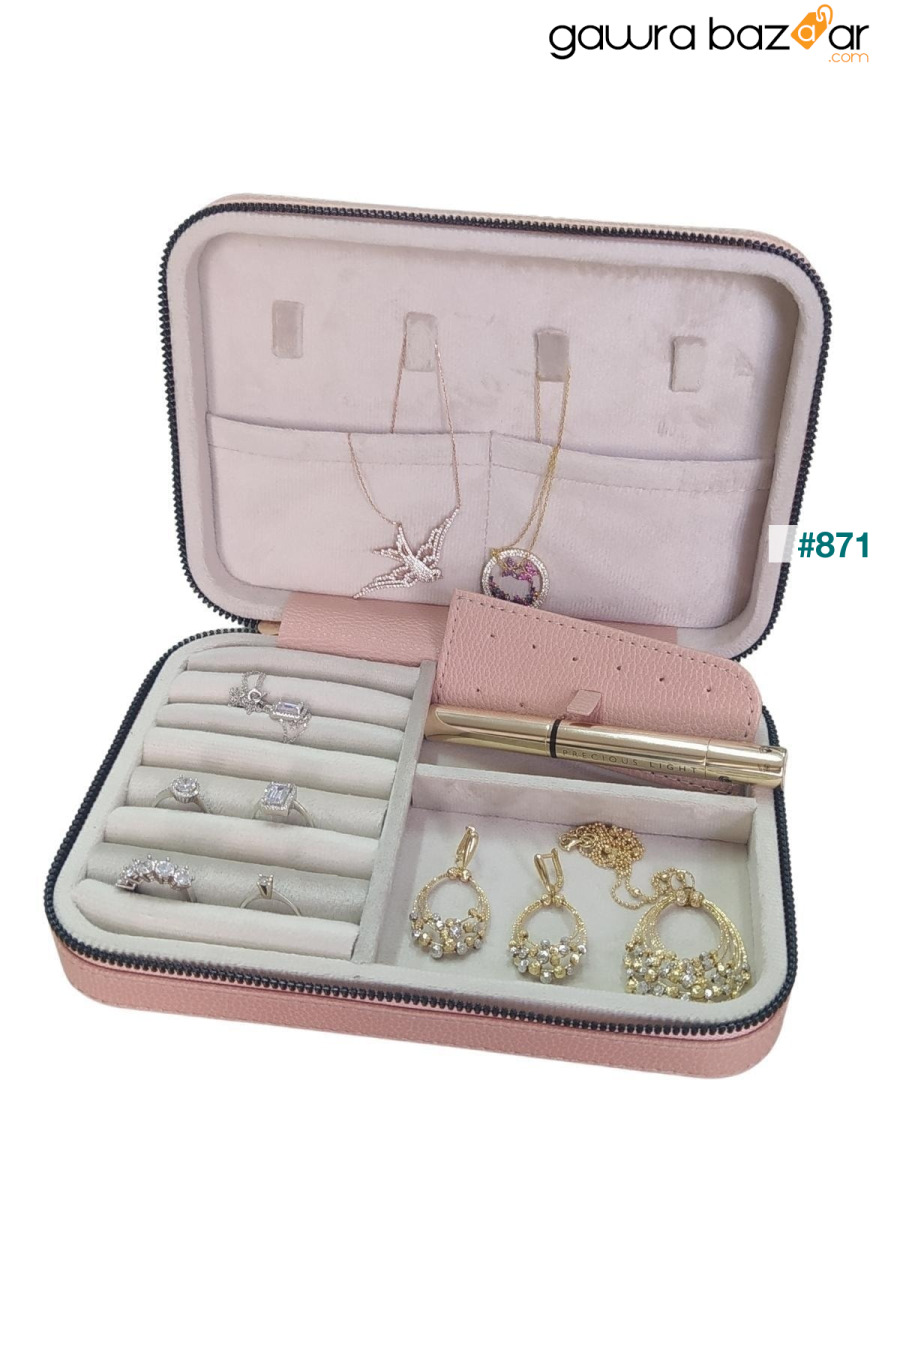 جلد بسحاب (علبة خشبية) مجوهرات كبيرة الحجم ، حقيبة سفر ومجوهرات ، علبة بودرة (14 × 21 سم) ÖZER KUTU 2